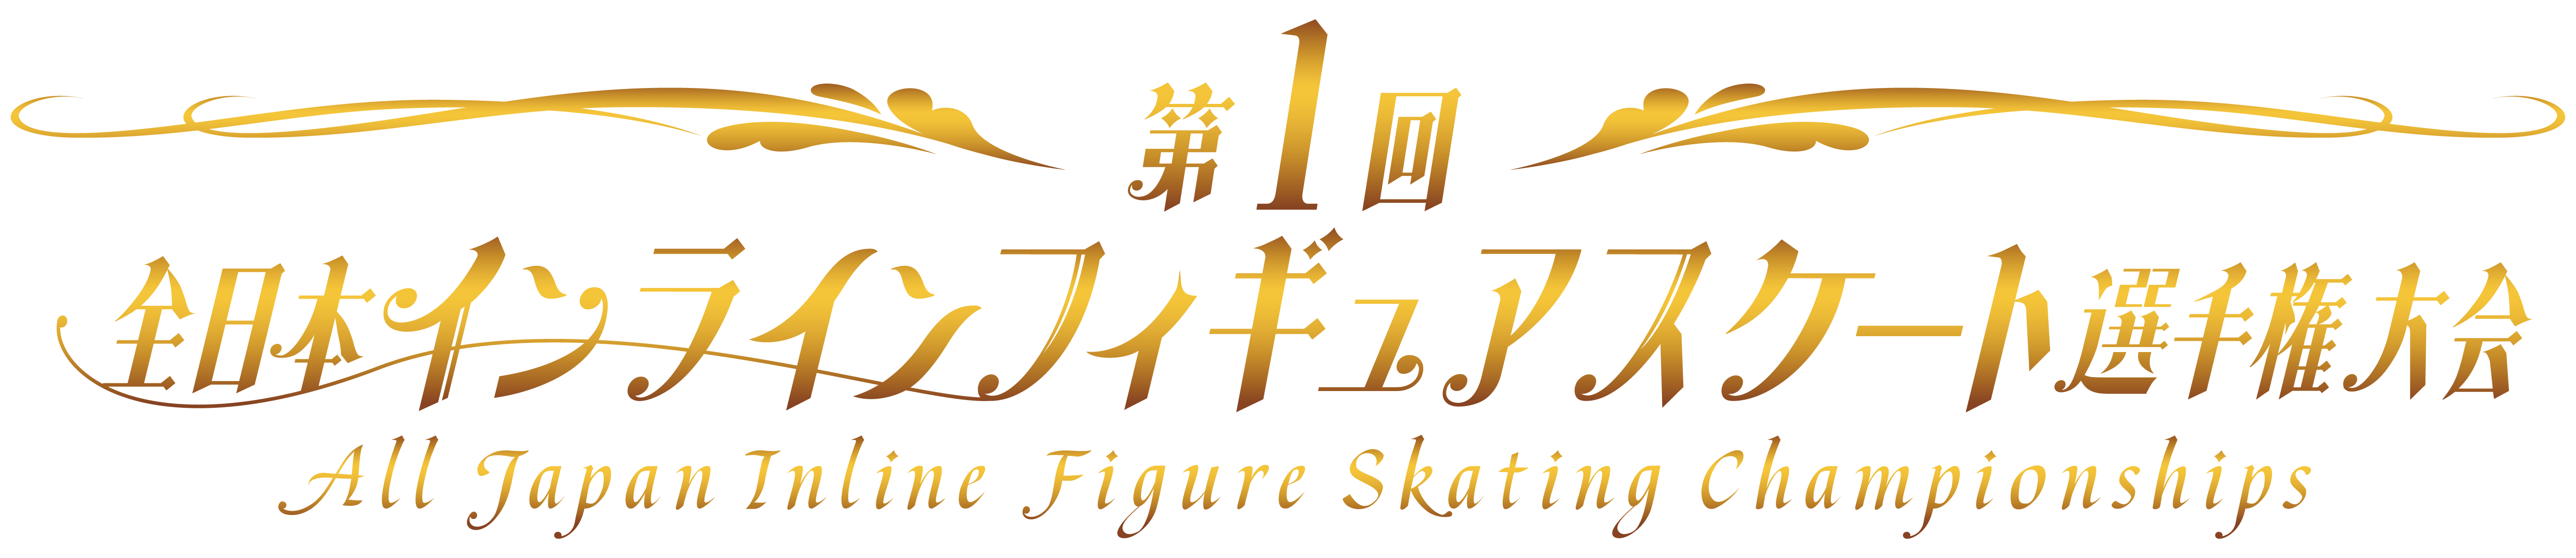 一般社団法人日本インラインフィギュアスケート協会 JIFSA インラインフィギュアスケート協会 インラインフィギュア インラインフィギュアスケート